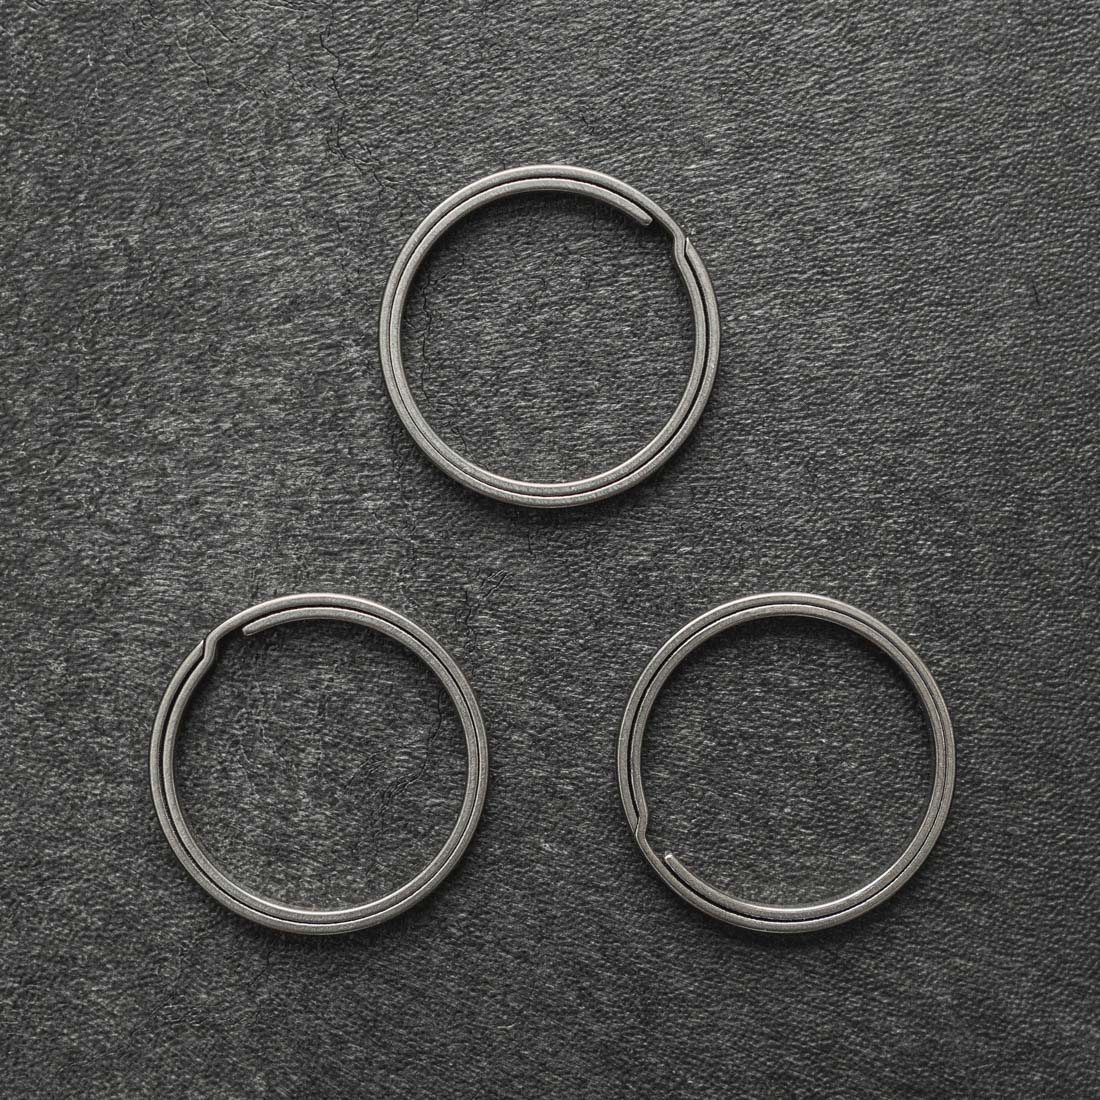 TI-EDC 5 pcs Size L Titanium Keychain Key Ring Split Ring